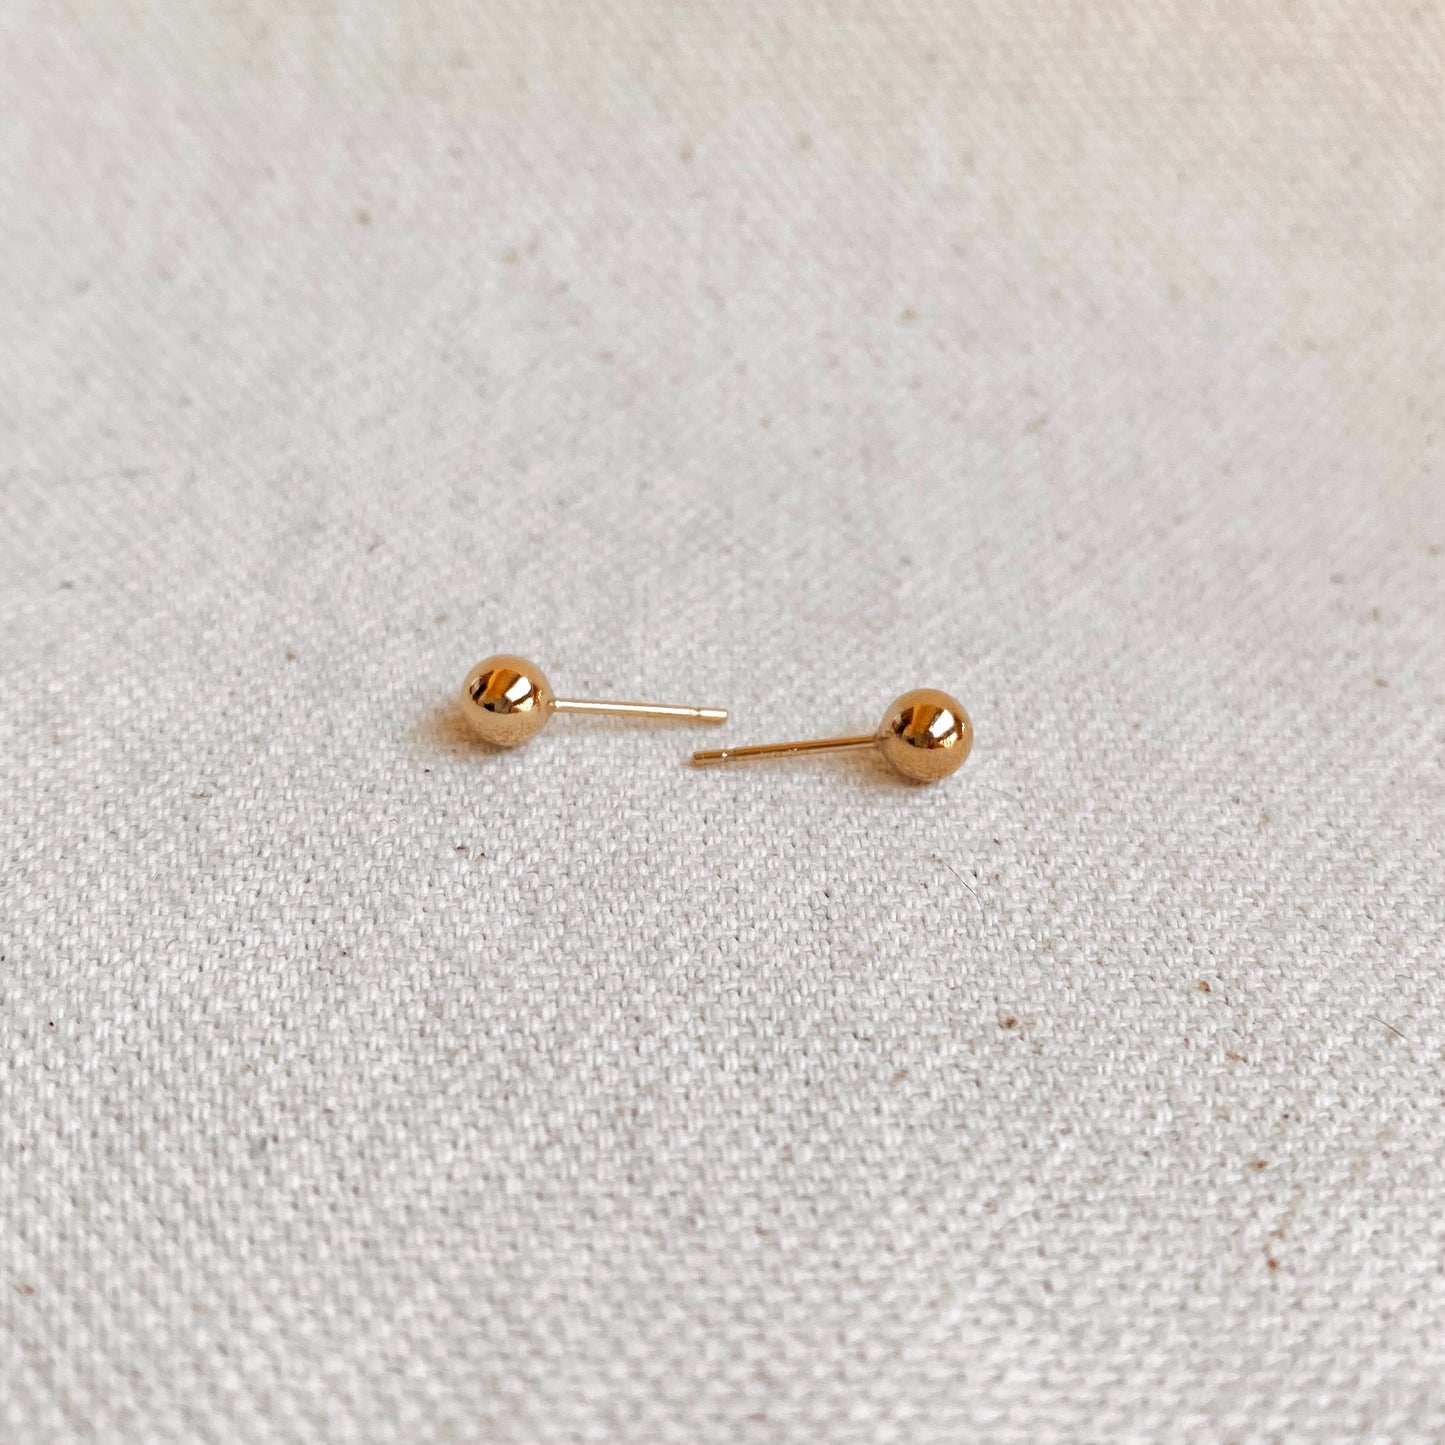 GoldFi 14k Gold Filled 5.0mm Ball Stud Earrings